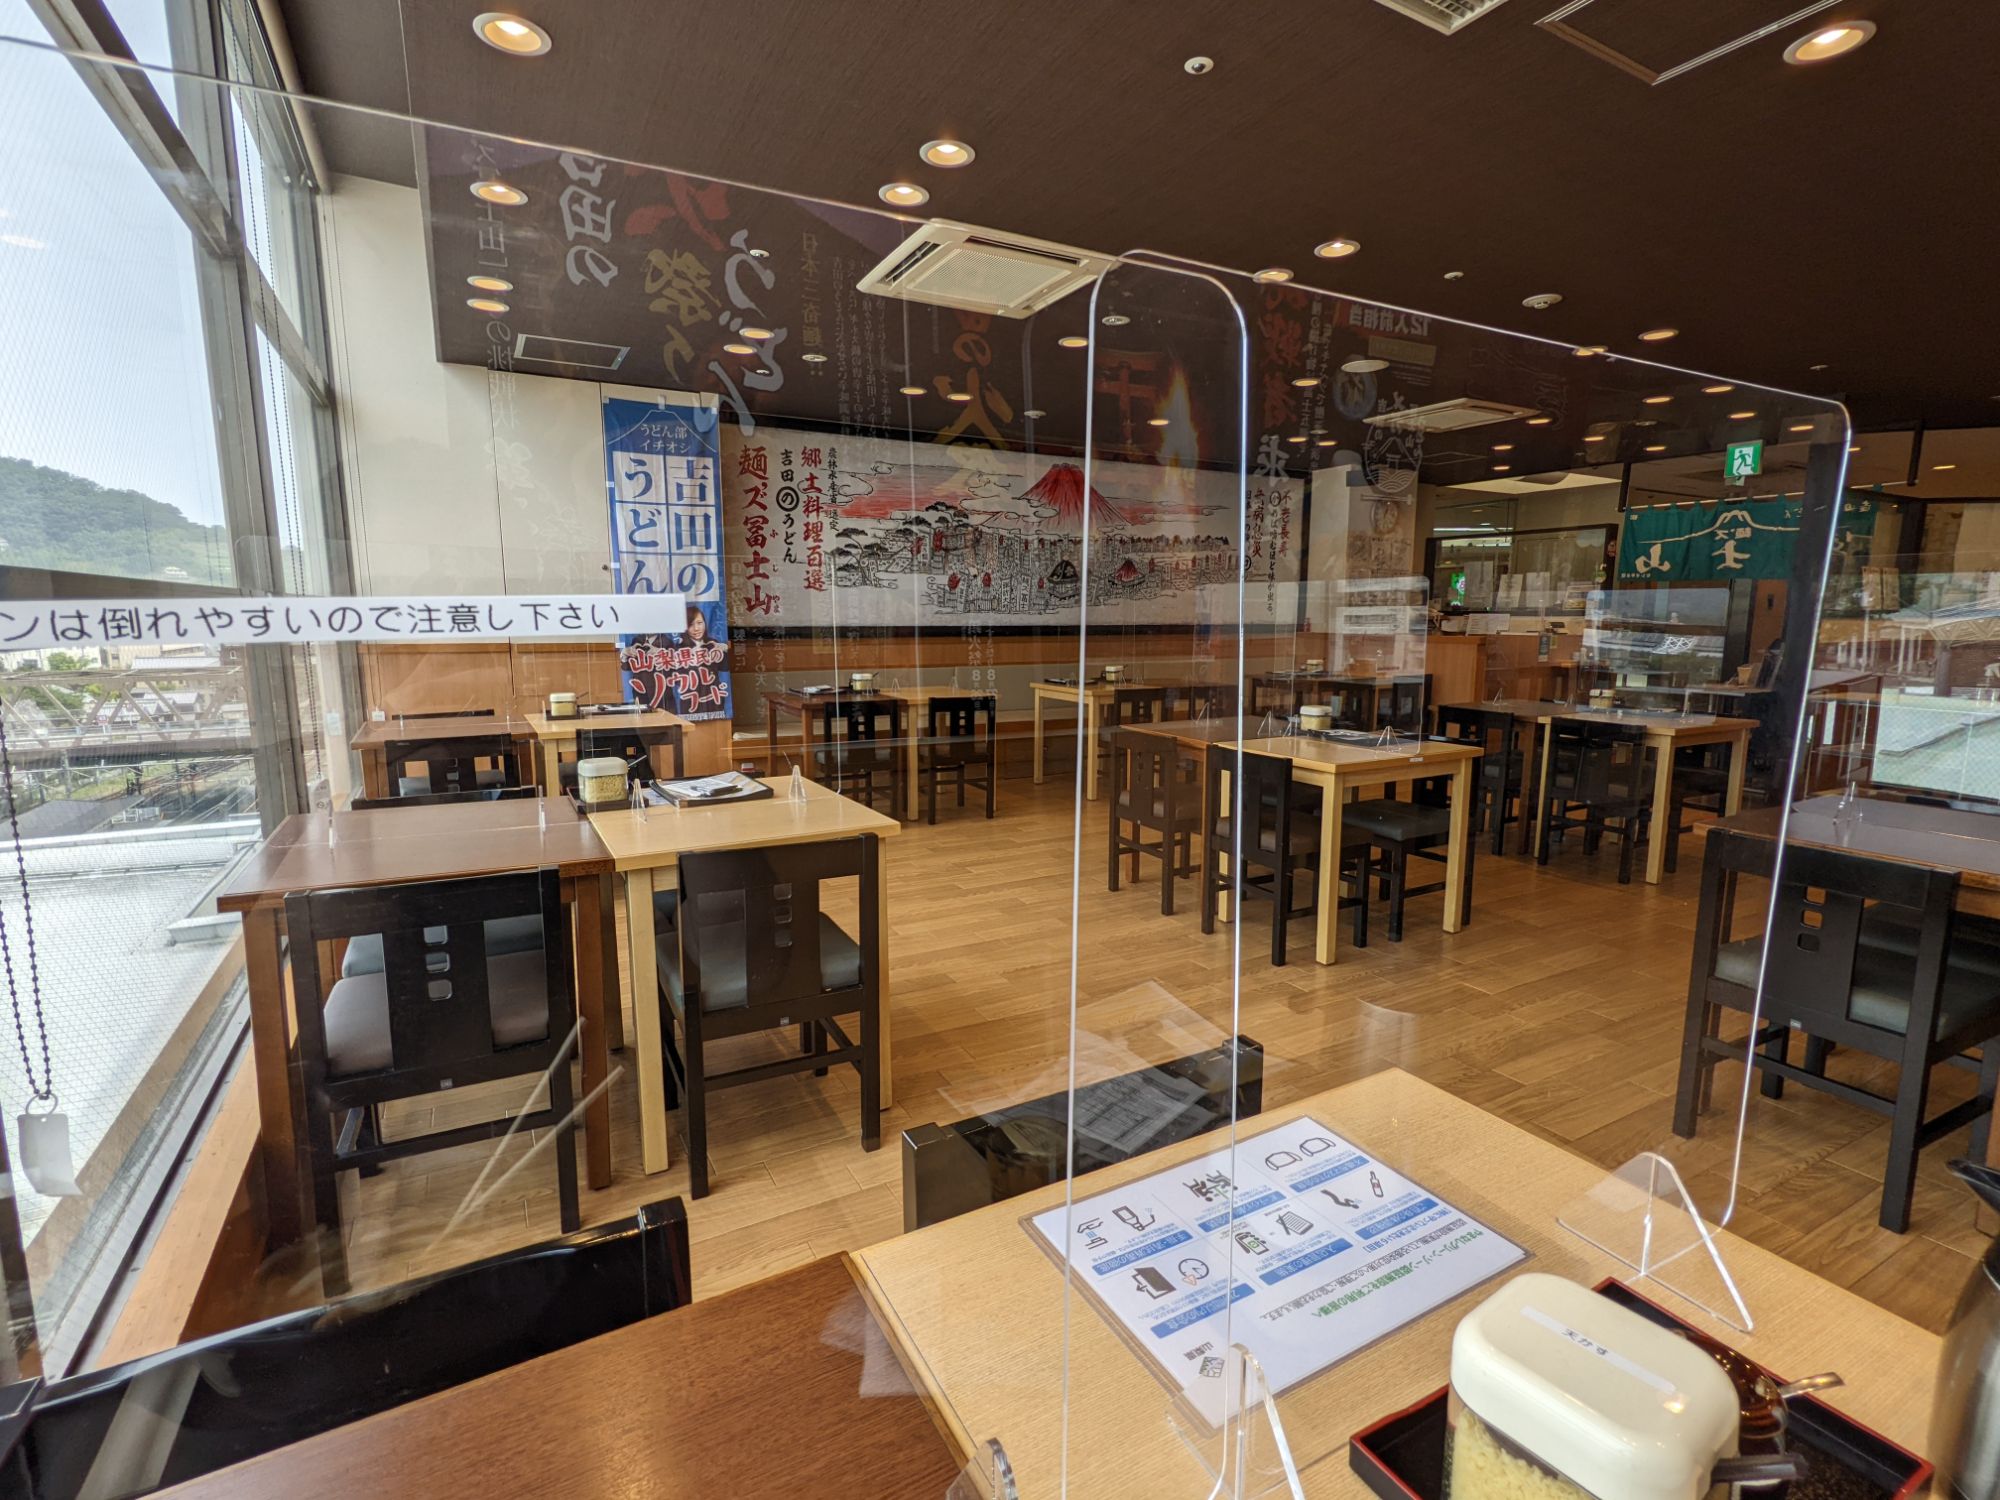 「麺’ズ冨士山 セレオ甲府店」の店内